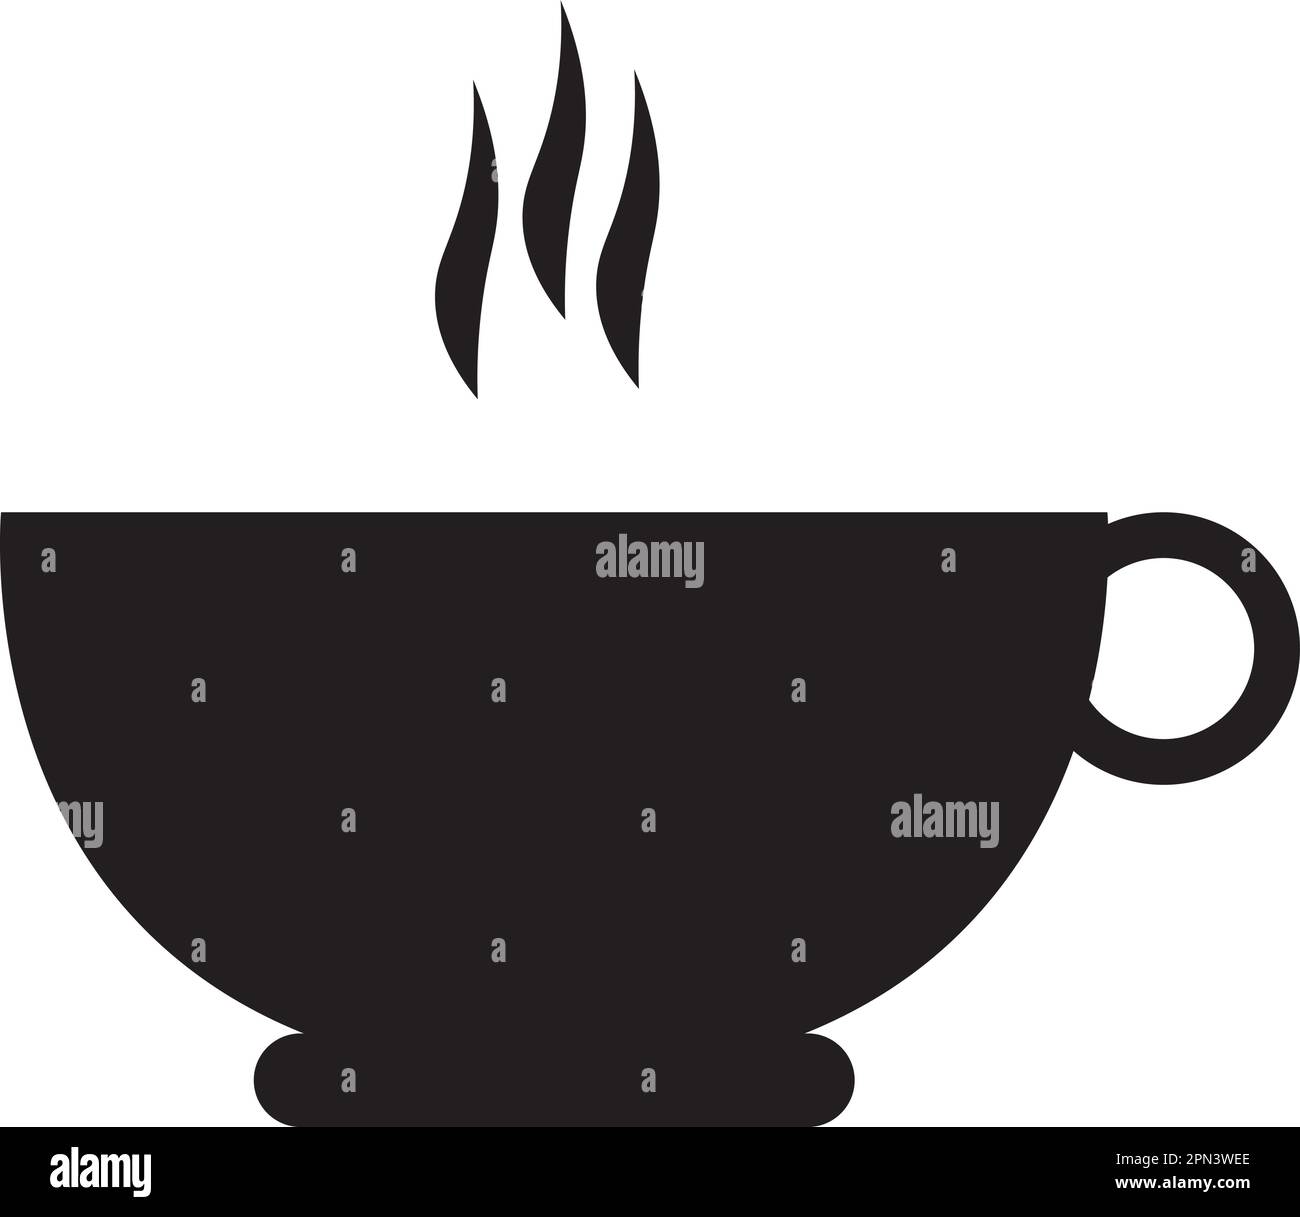 Tasse de thé vapeur : symbole vectoriel noir et blanc apaisant d'une tasse de thé ou de café parfaitement brassée Illustration de Vecteur